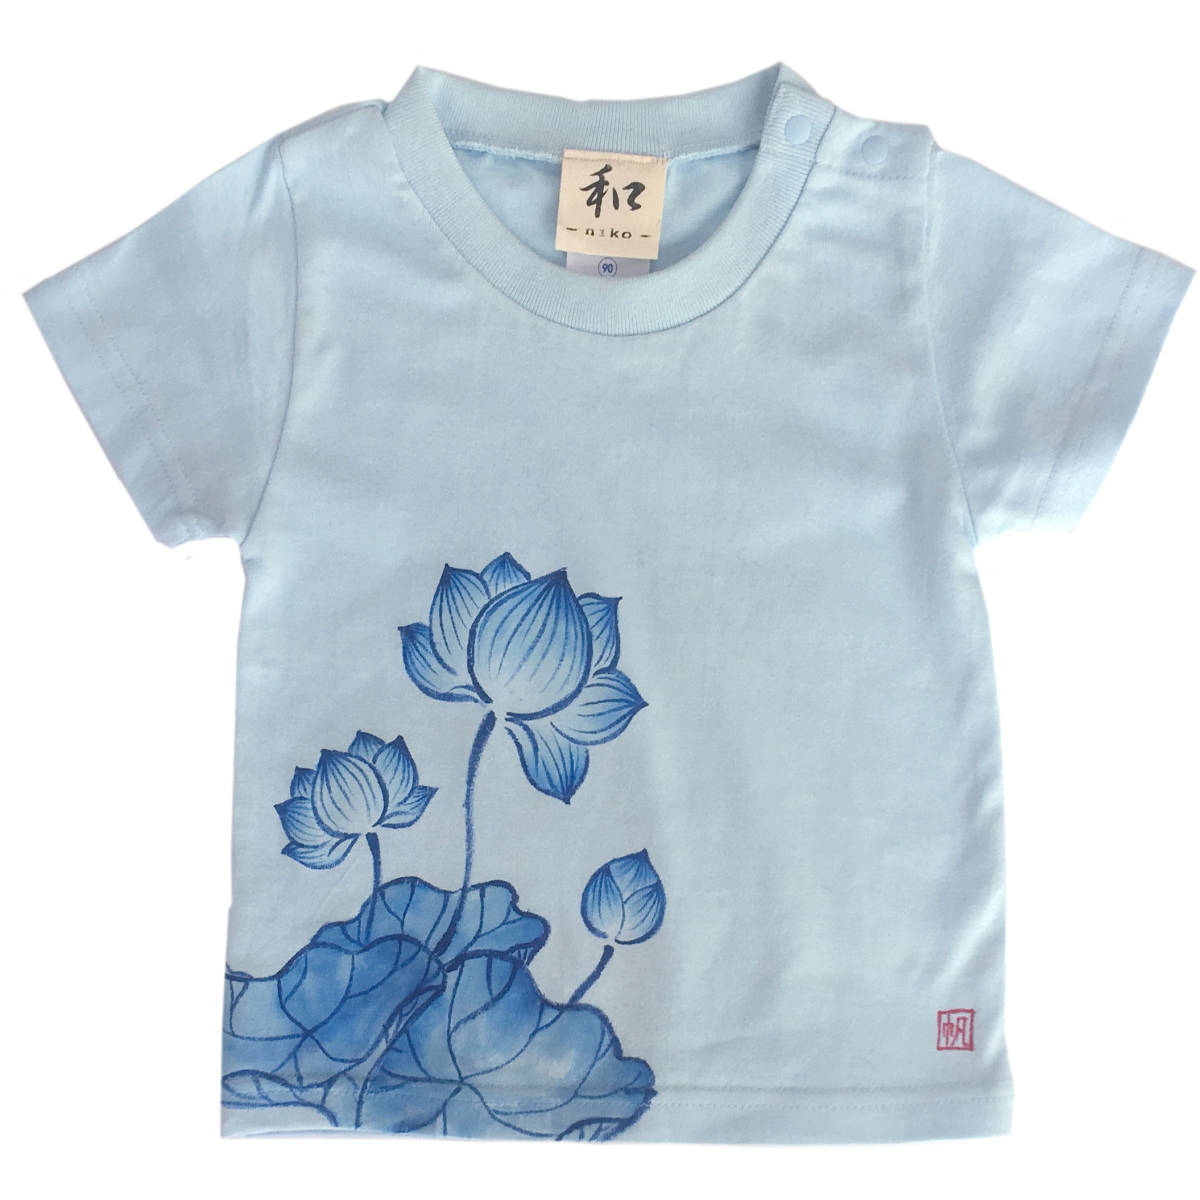 キッズ Tシャツ 110サイズ ブルー 蓮柄Tシャツ 手描きで描いた蓮の花柄Tシャツ 半袖 和柄 和風 レトロ ハンドメイド_画像1